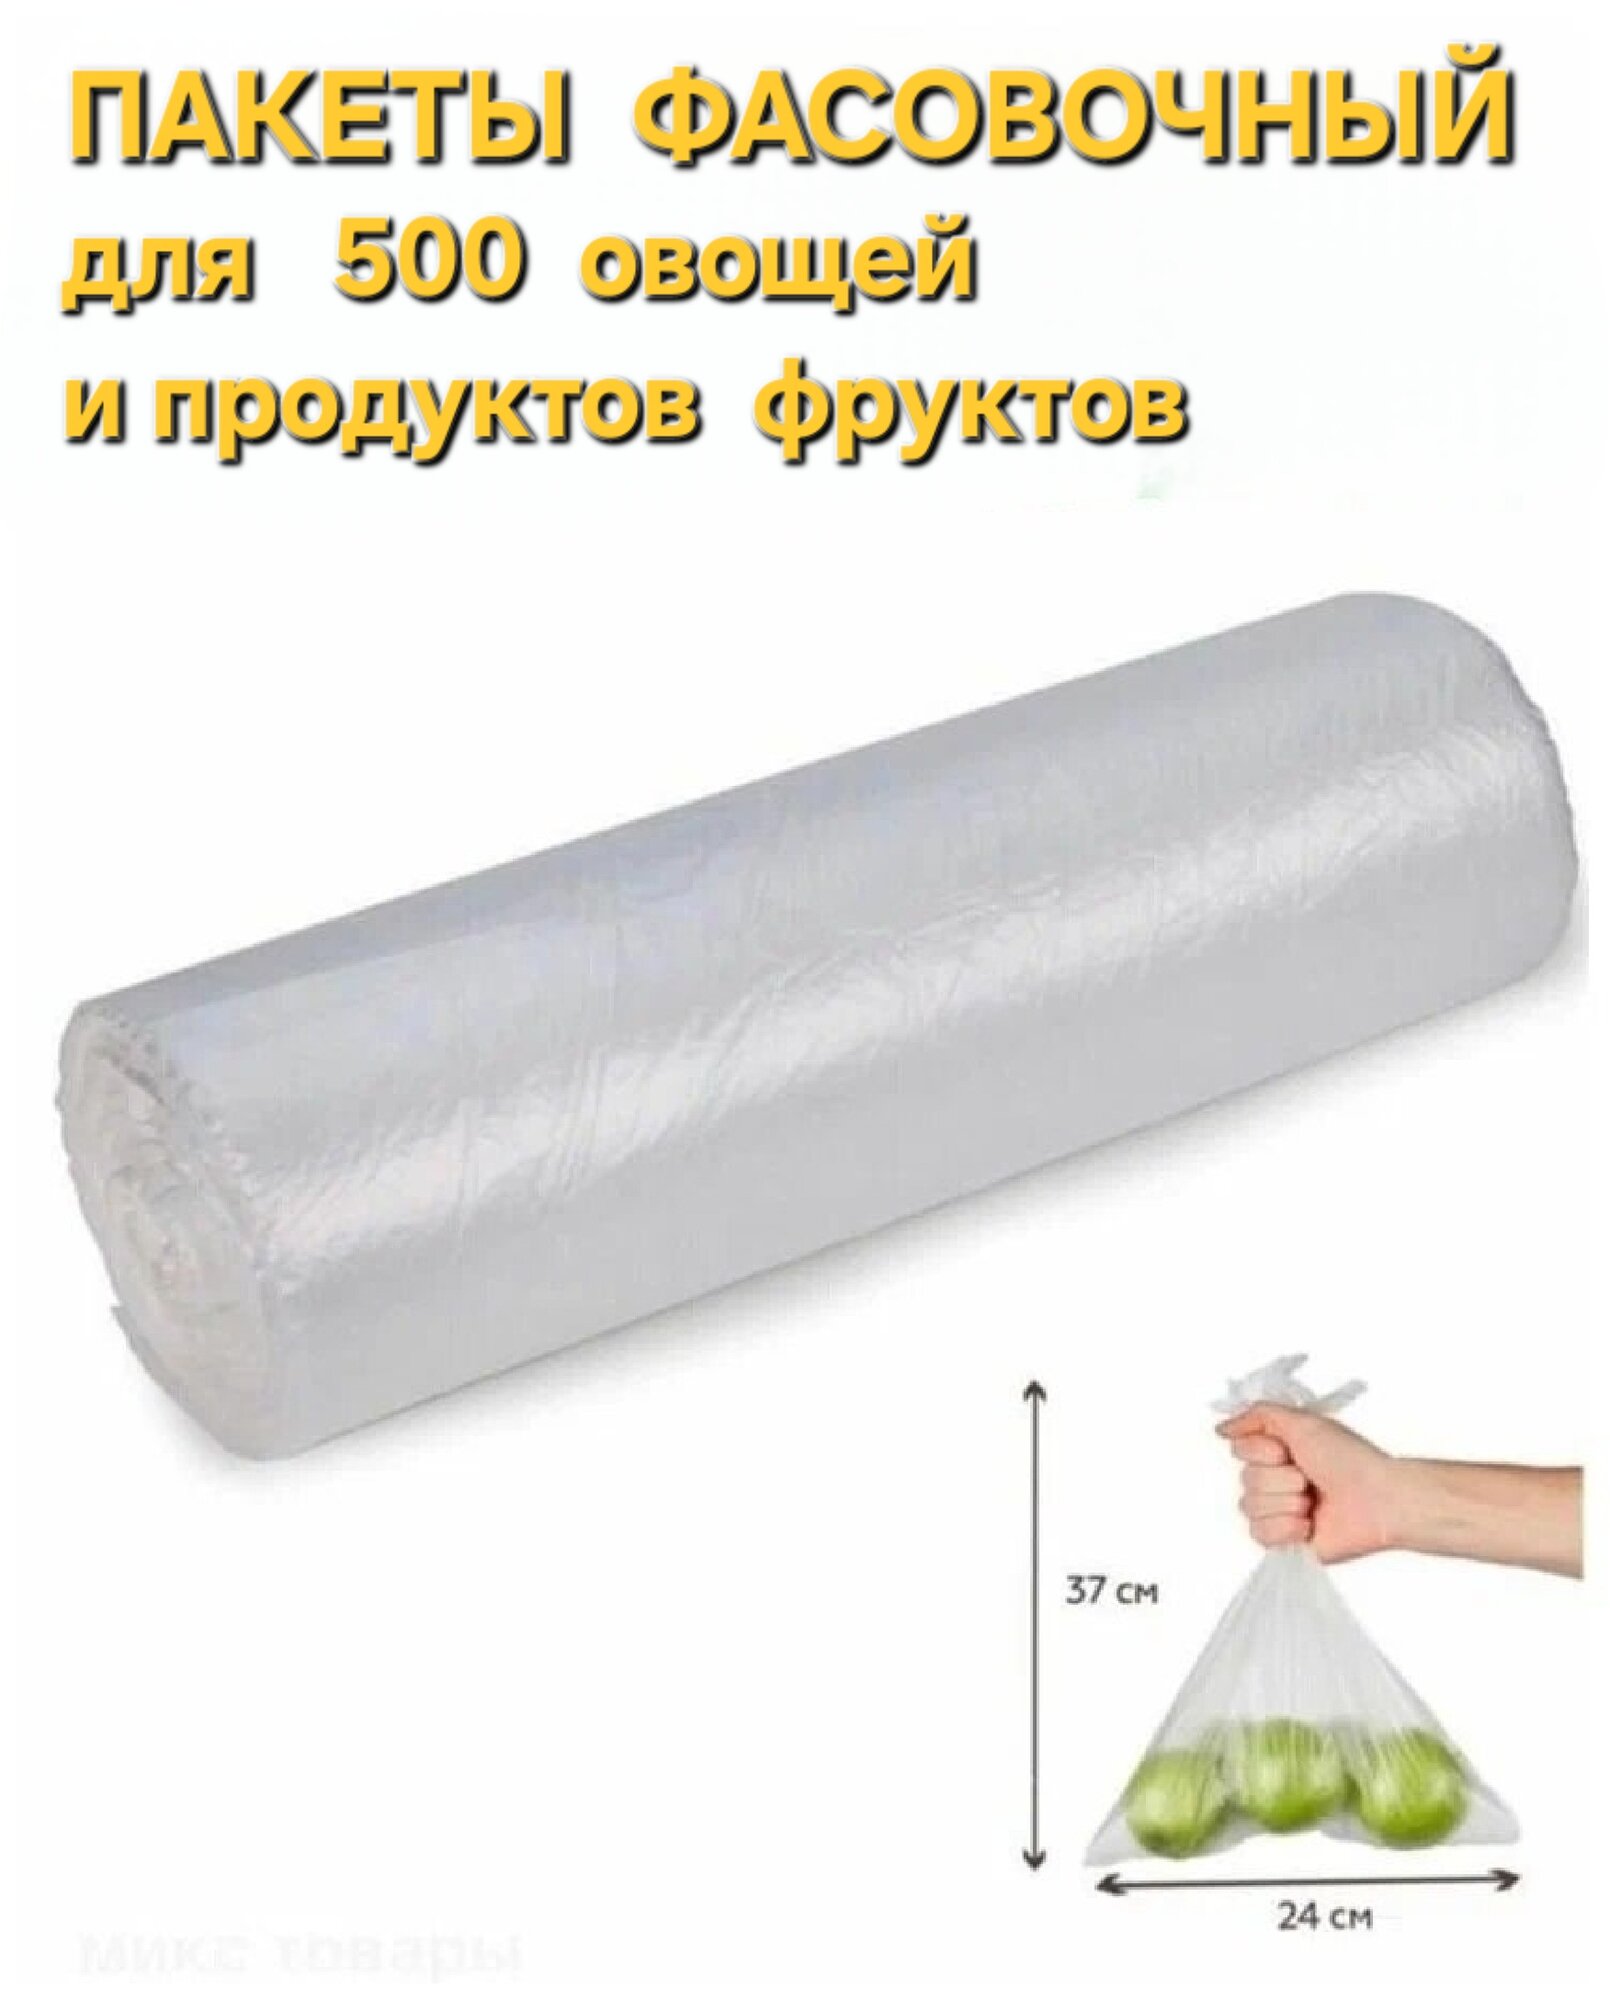 Пакеты фасовочные для пищевых продуктов в рулоне 24 х 37 см, 500 шт